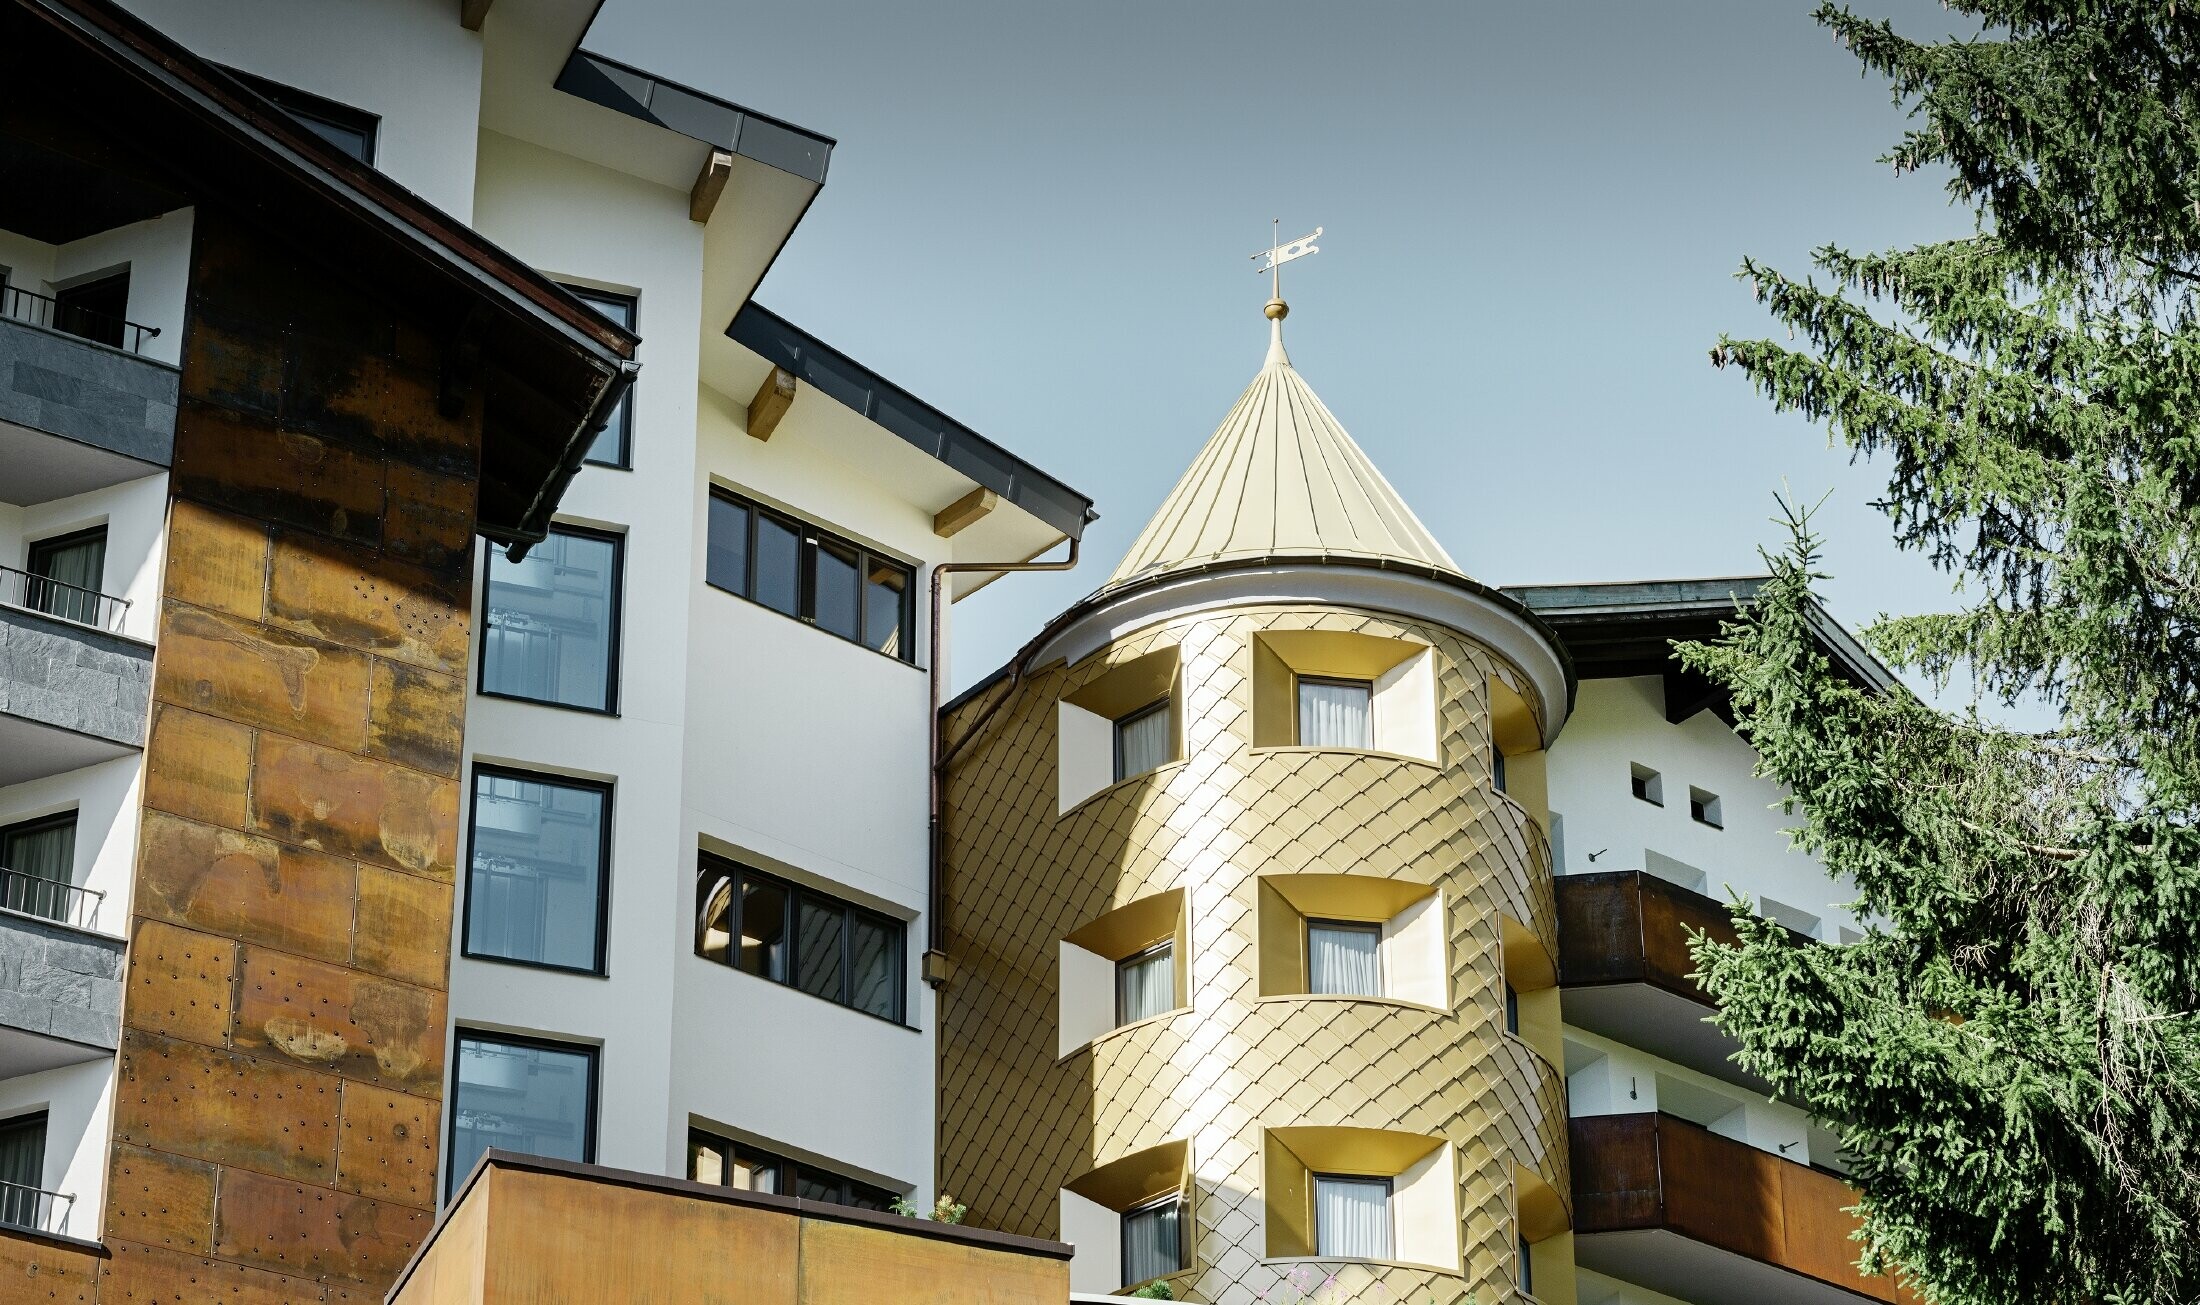 Hôtel traditionnel d’Ischgl avec balcons et façade en bois — Façade de la tour habillée de losanges en aluminium PREFA de couleur or